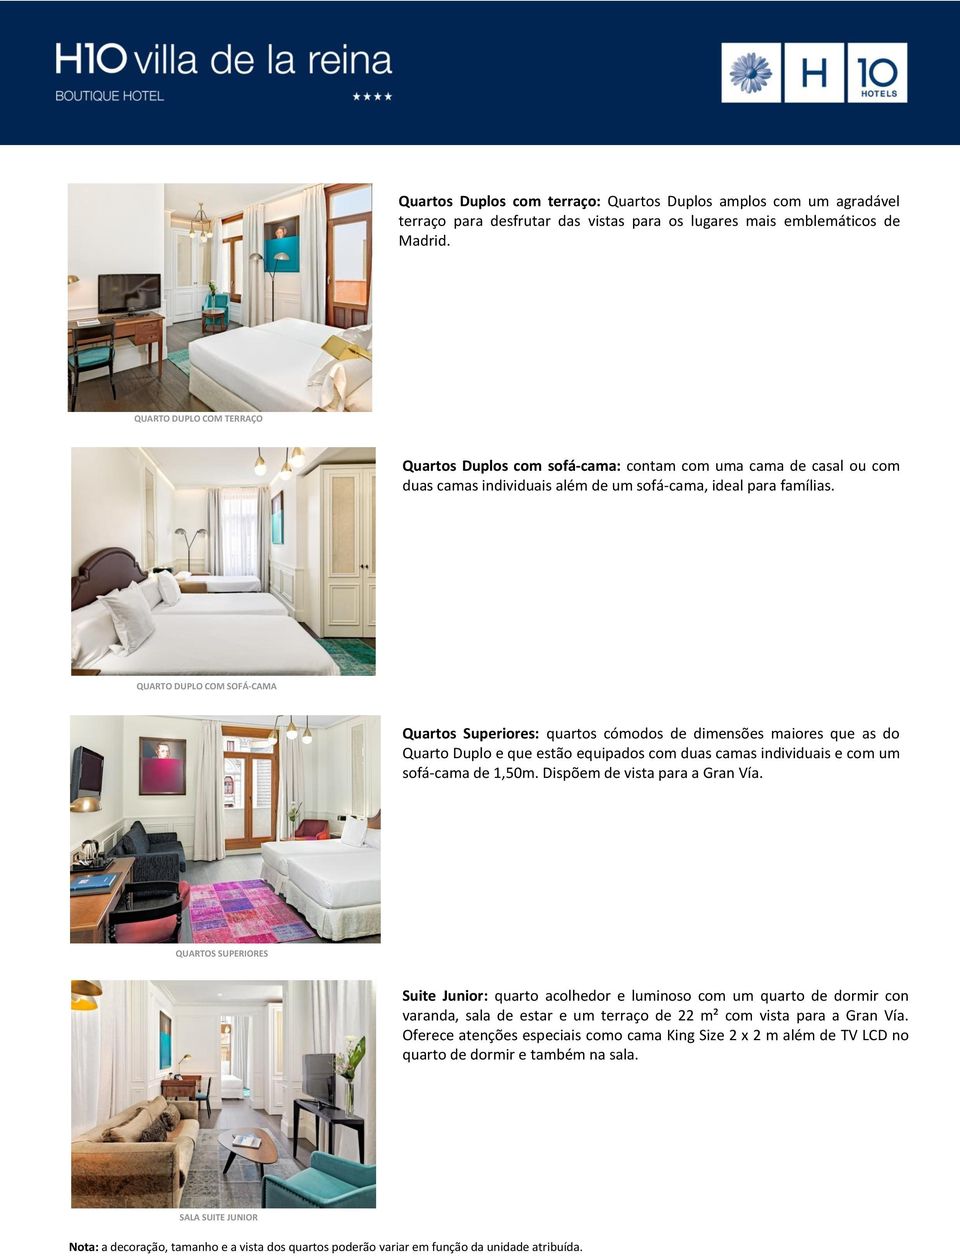 QUARTO DUPLO COM SOFÁ-CAMA Quartos Superiores: quartos cómodos de dimensões maiores que as do Quarto Duplo e que estão equipados com duas camas individuais e com um sofá-cama de 1,50m.